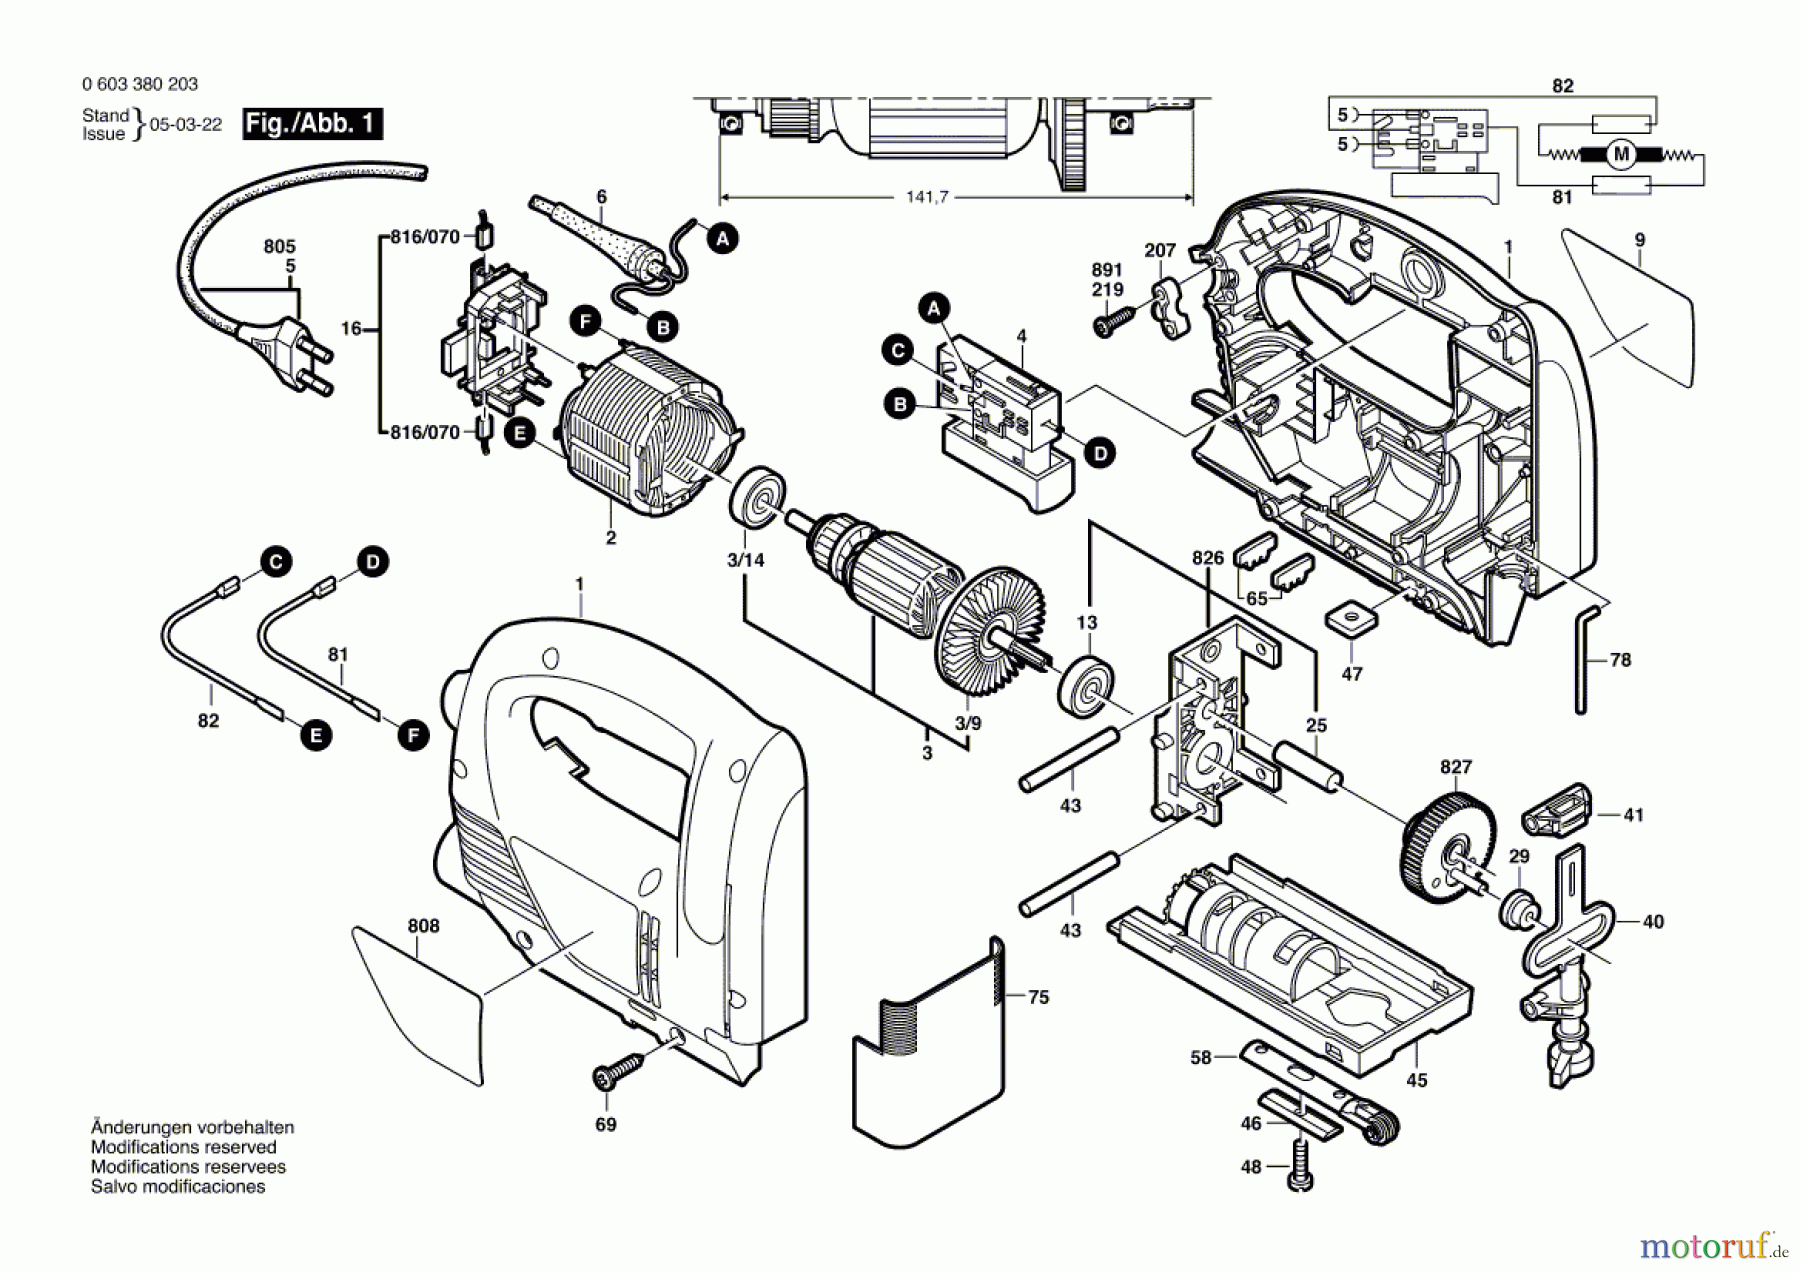  Bosch Werkzeug Stichsäge PST 650 E Seite 1